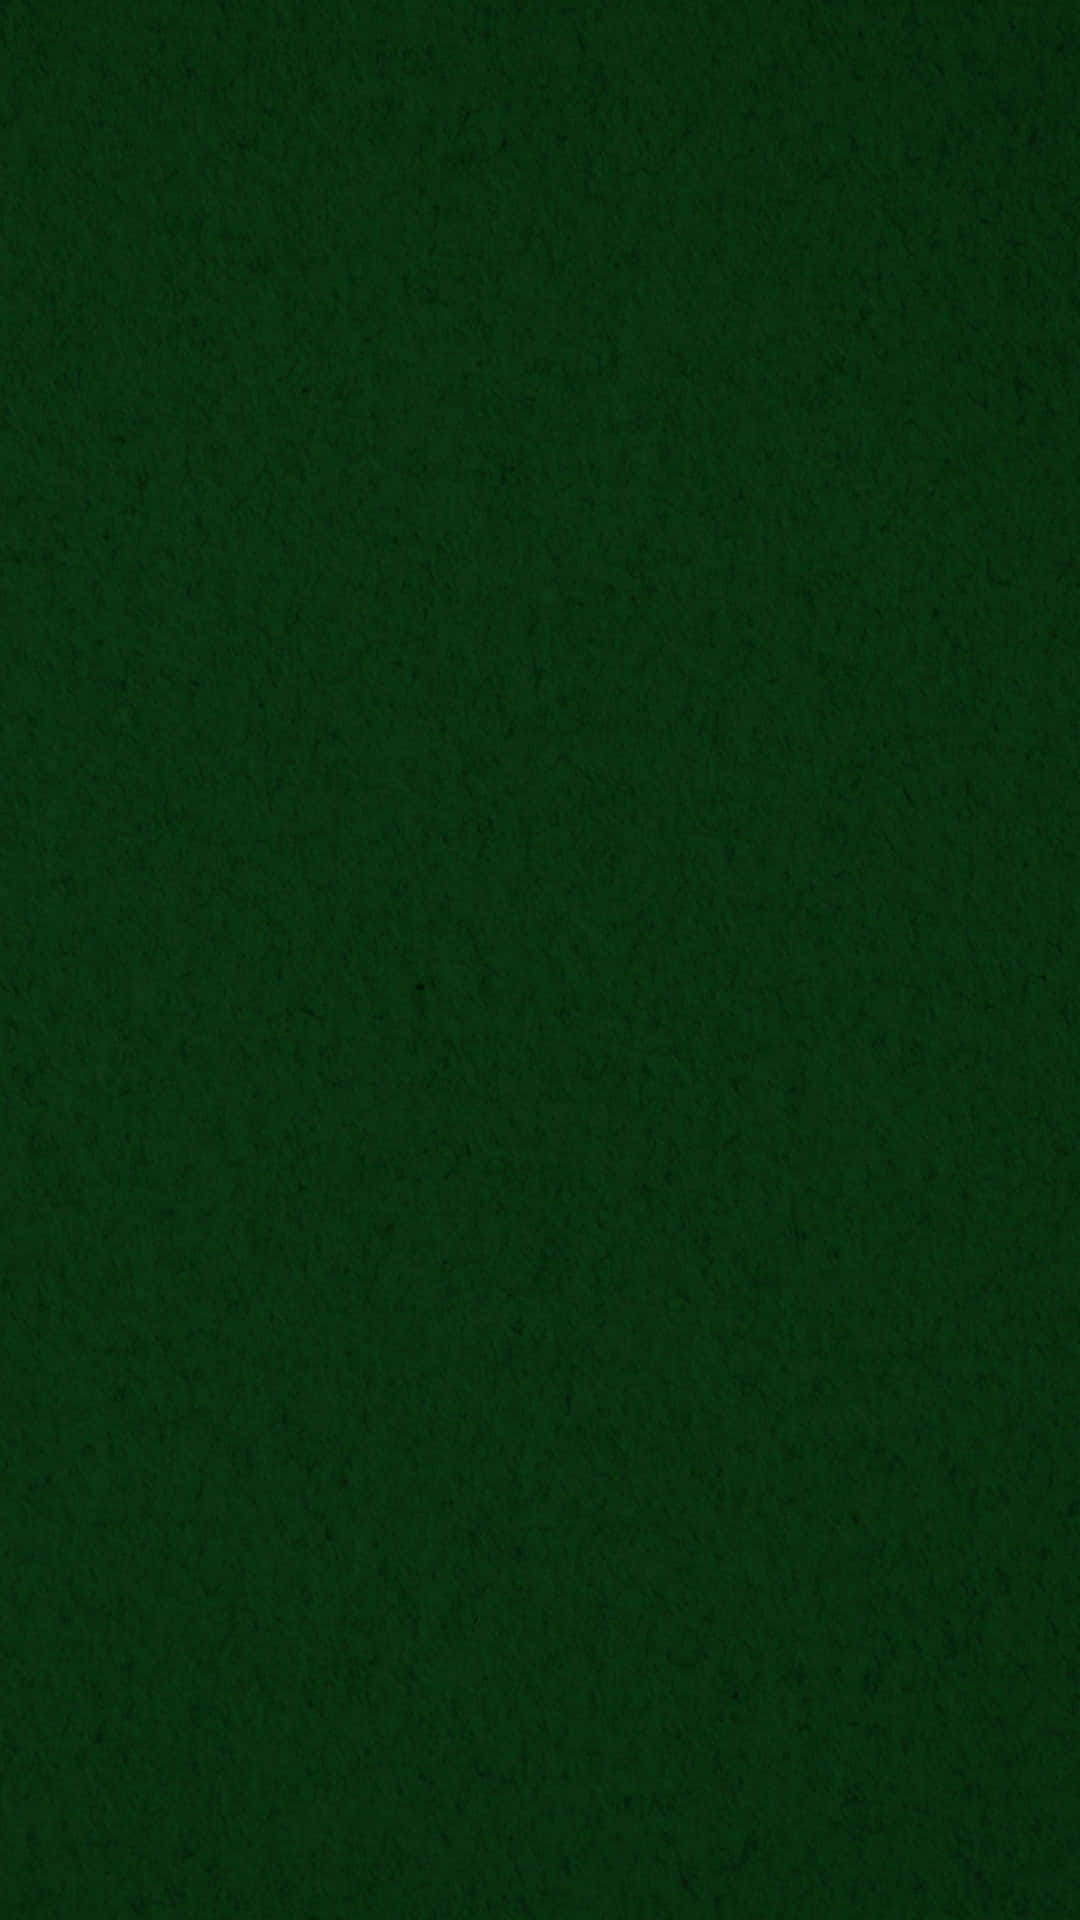 Stylish Green Phone Background